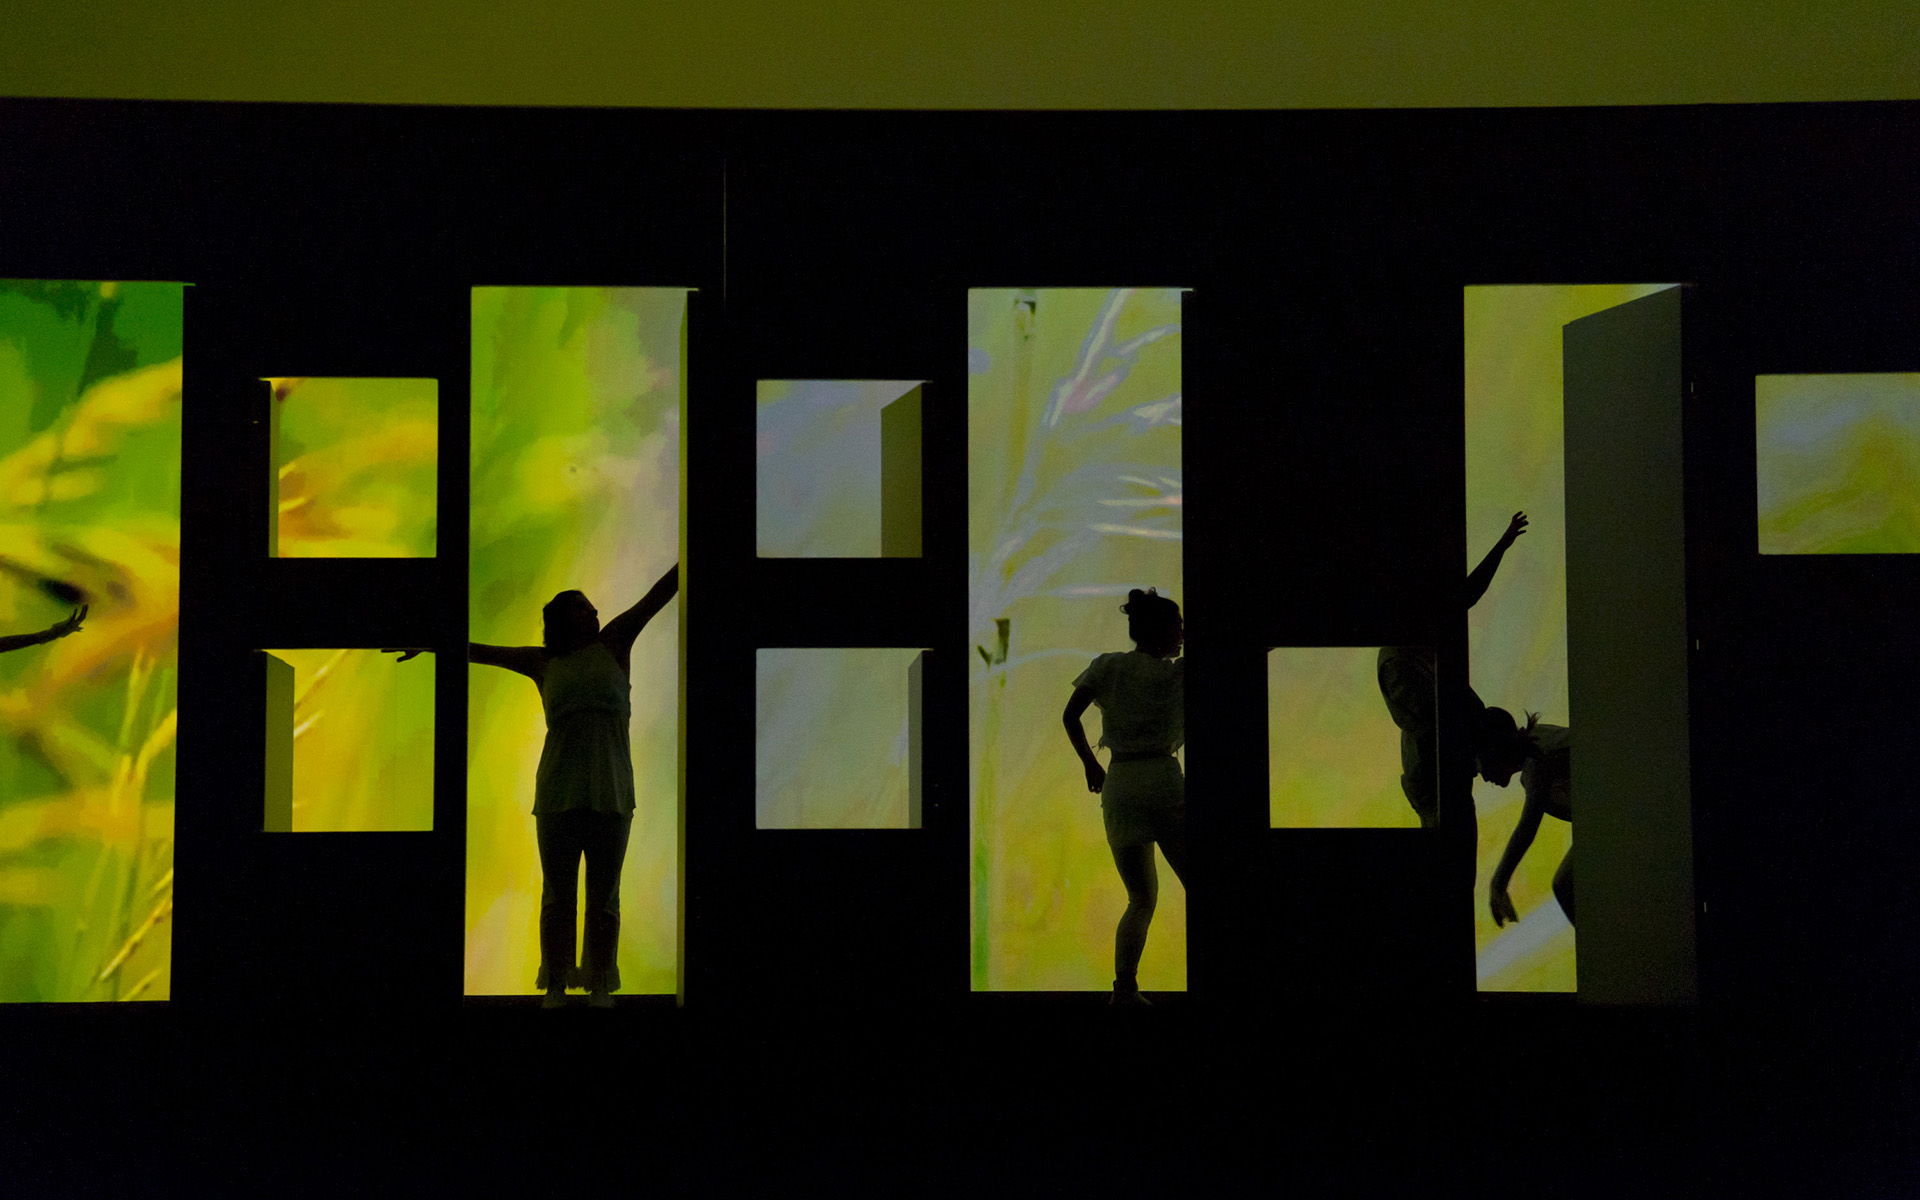 Dance Gala 2017 photo. Dancers in silhouette, green lighting behind, viewed through doorways and windows.